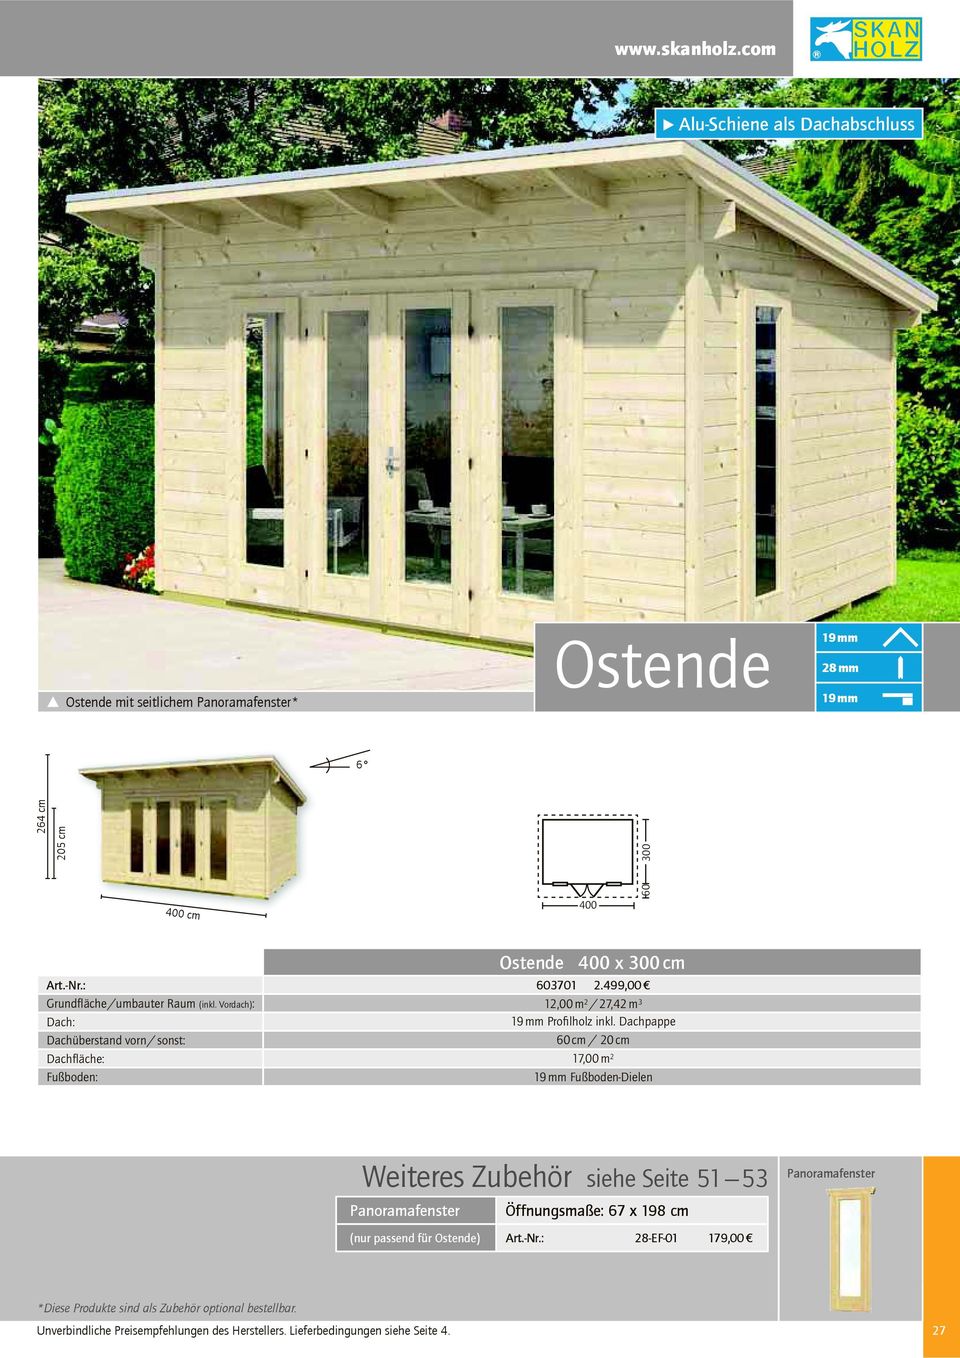 /umbauter Raum (inkl. Vordach): Dachüberstand vorn / sonst: Dachfläche: Ostende 400 x cm 603701 2.